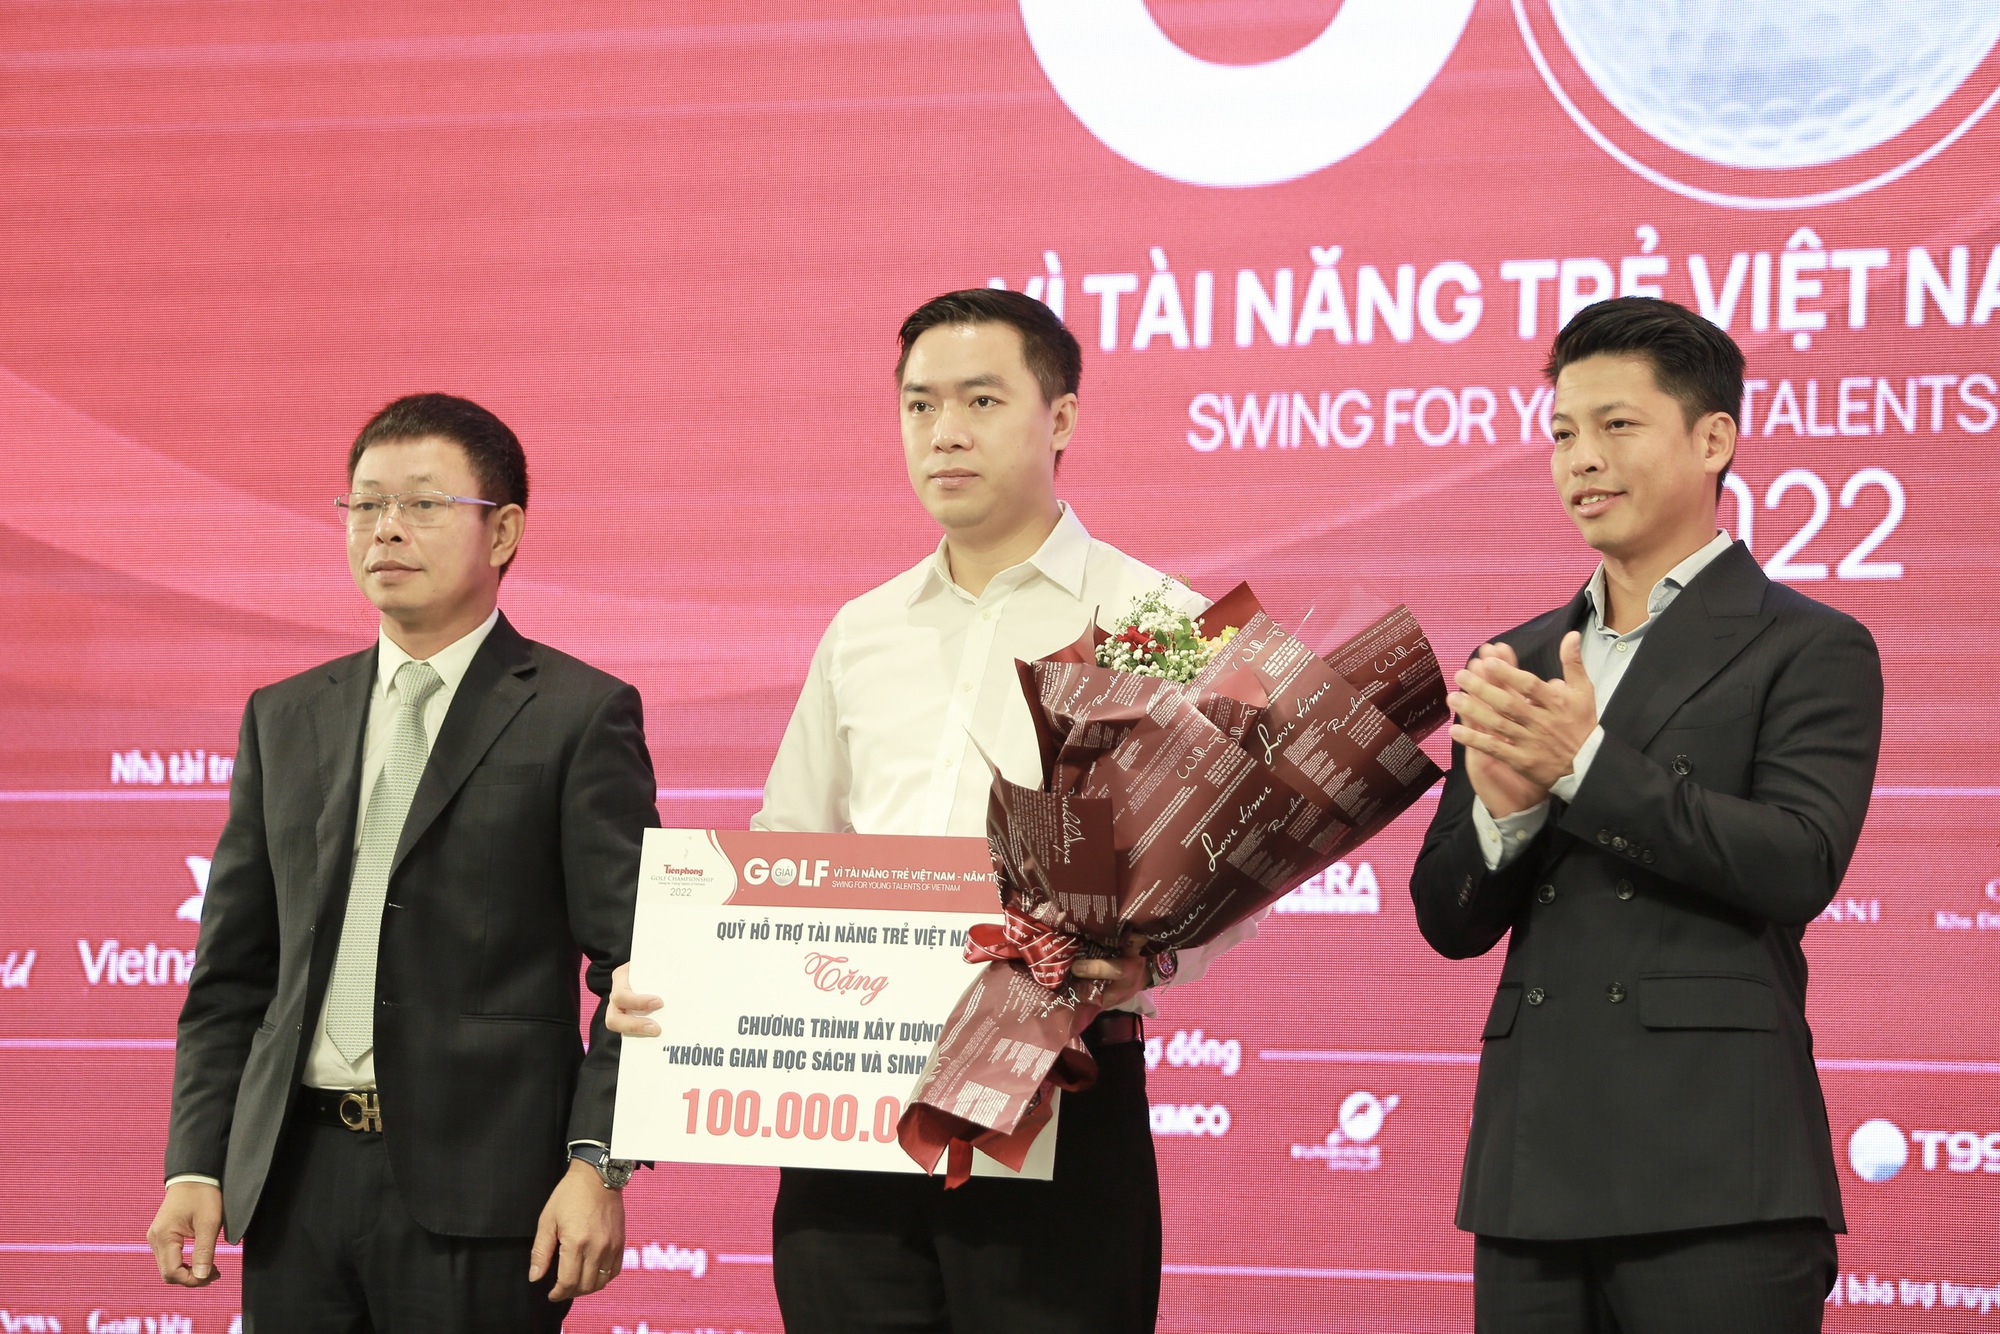 Hoa hậu Đỗ Thị Hà thật thà chia sẻ 1 điều khi làm đại sứ Tiền Phong Golf Championship 2022 - Ảnh 5.